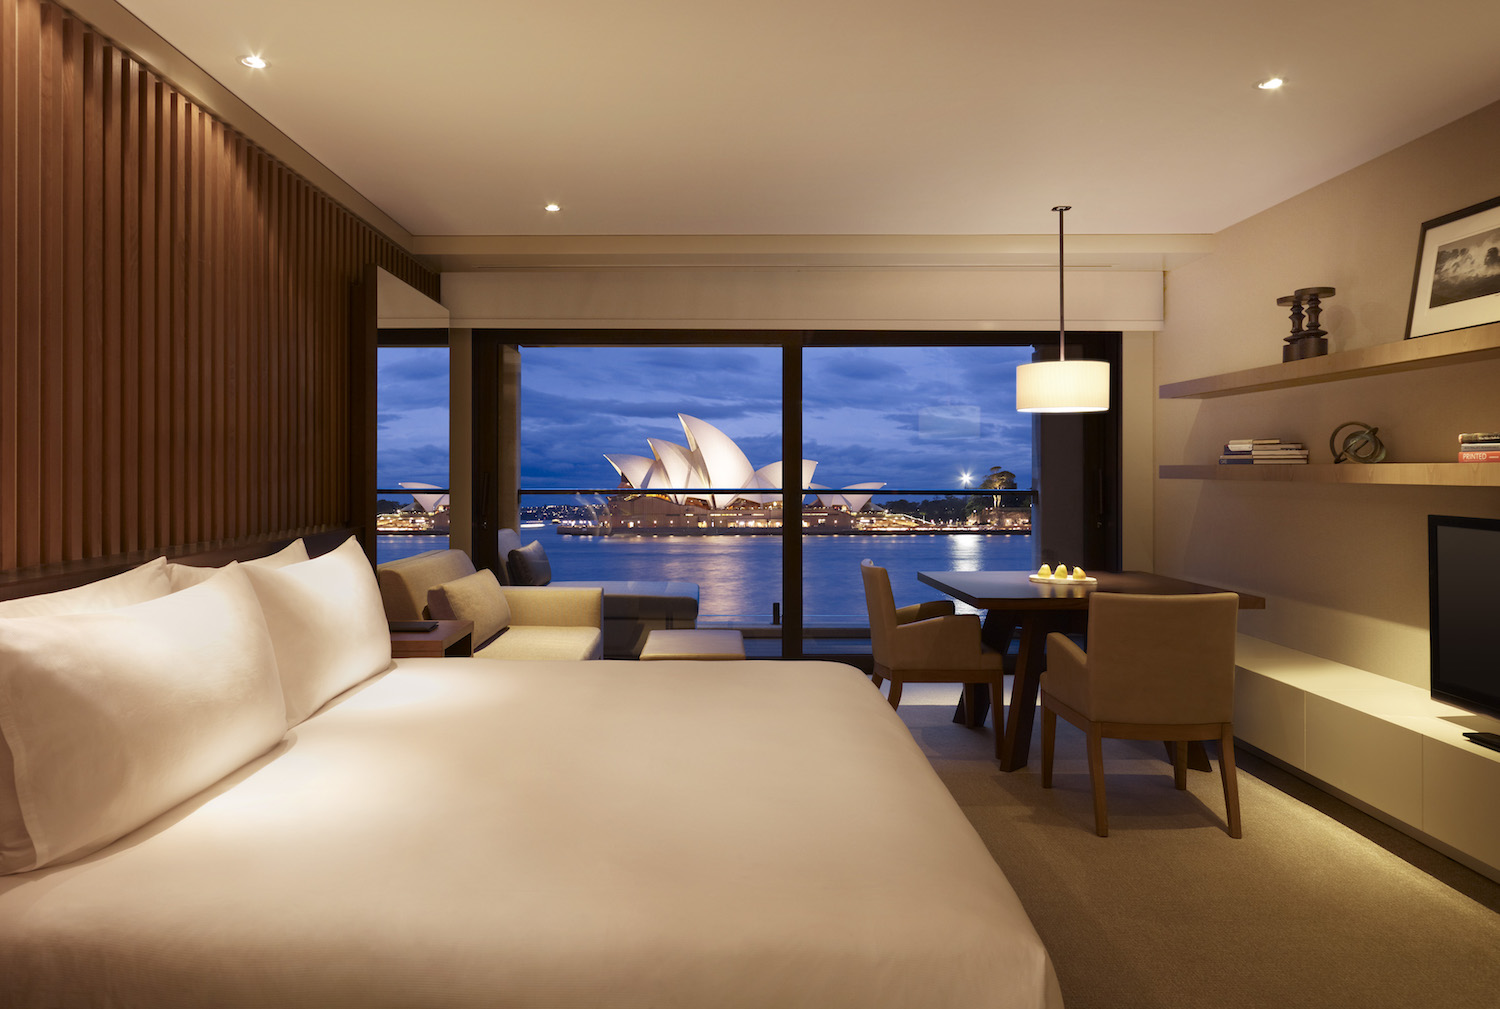 King Opera View Room at Park Hyatt Sydney Hotel